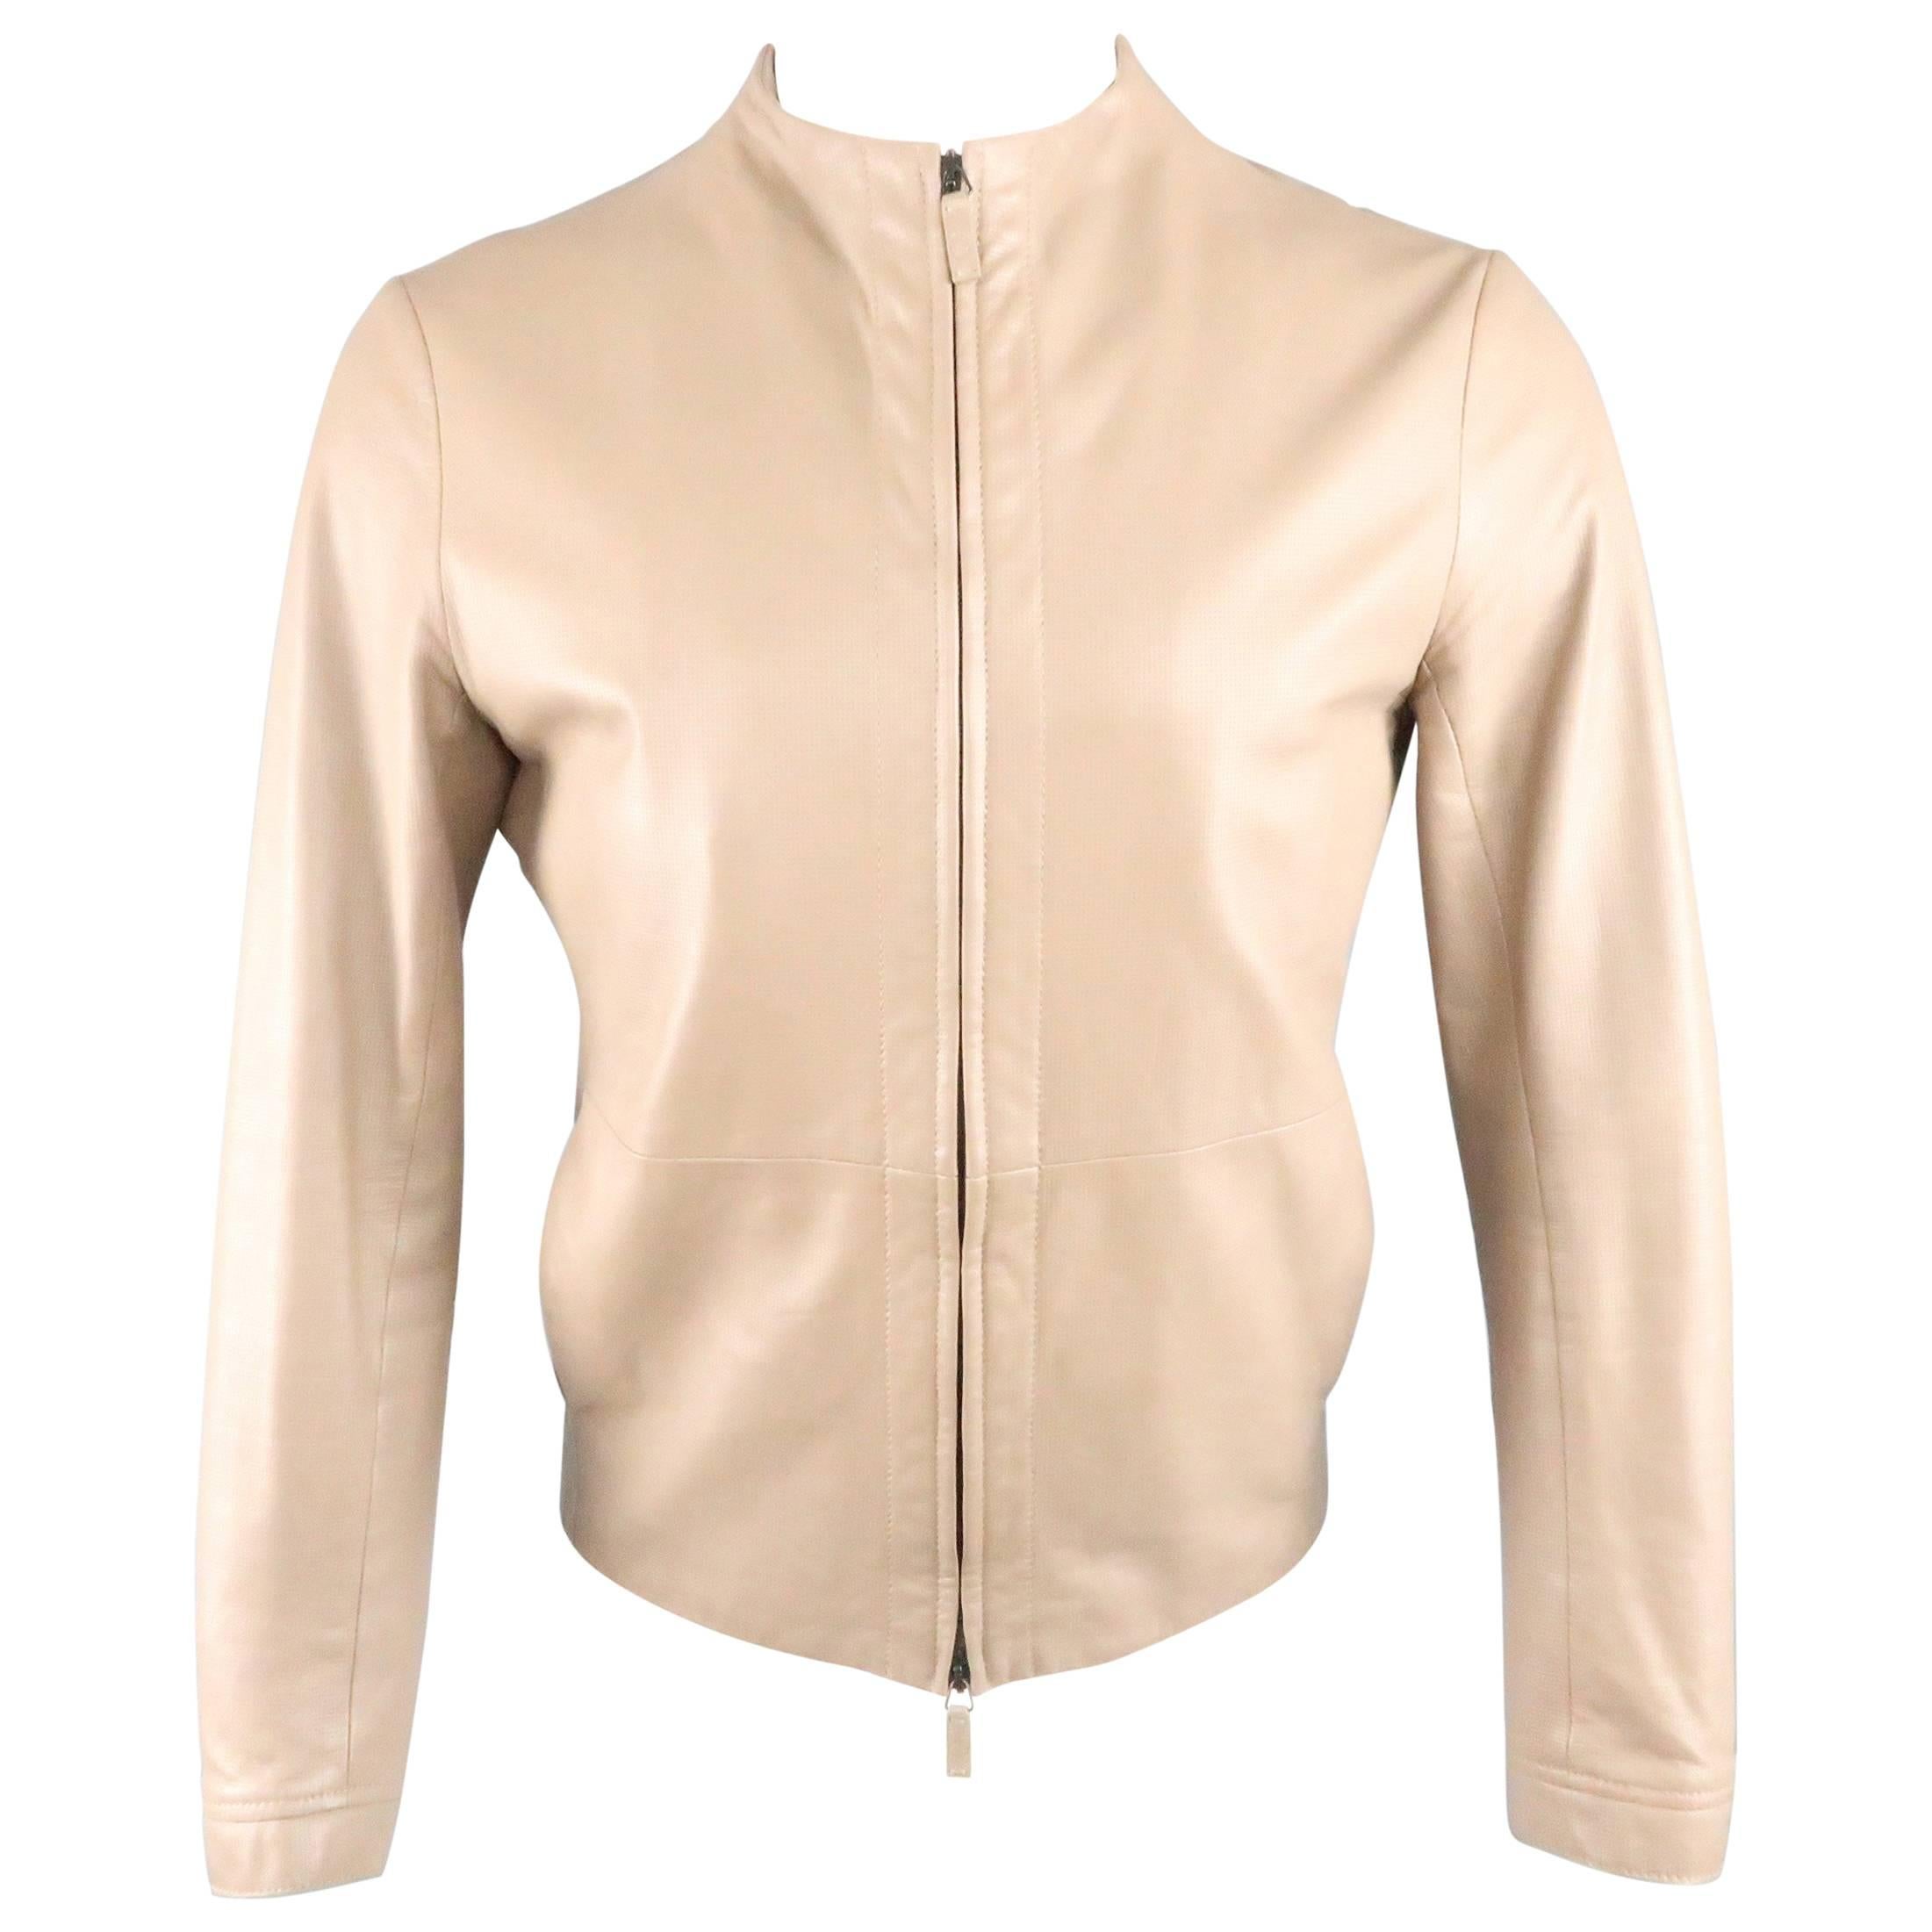 Giorgio Armani Leather Jackets - 13 For Sale on 1stDibs | giorgio 